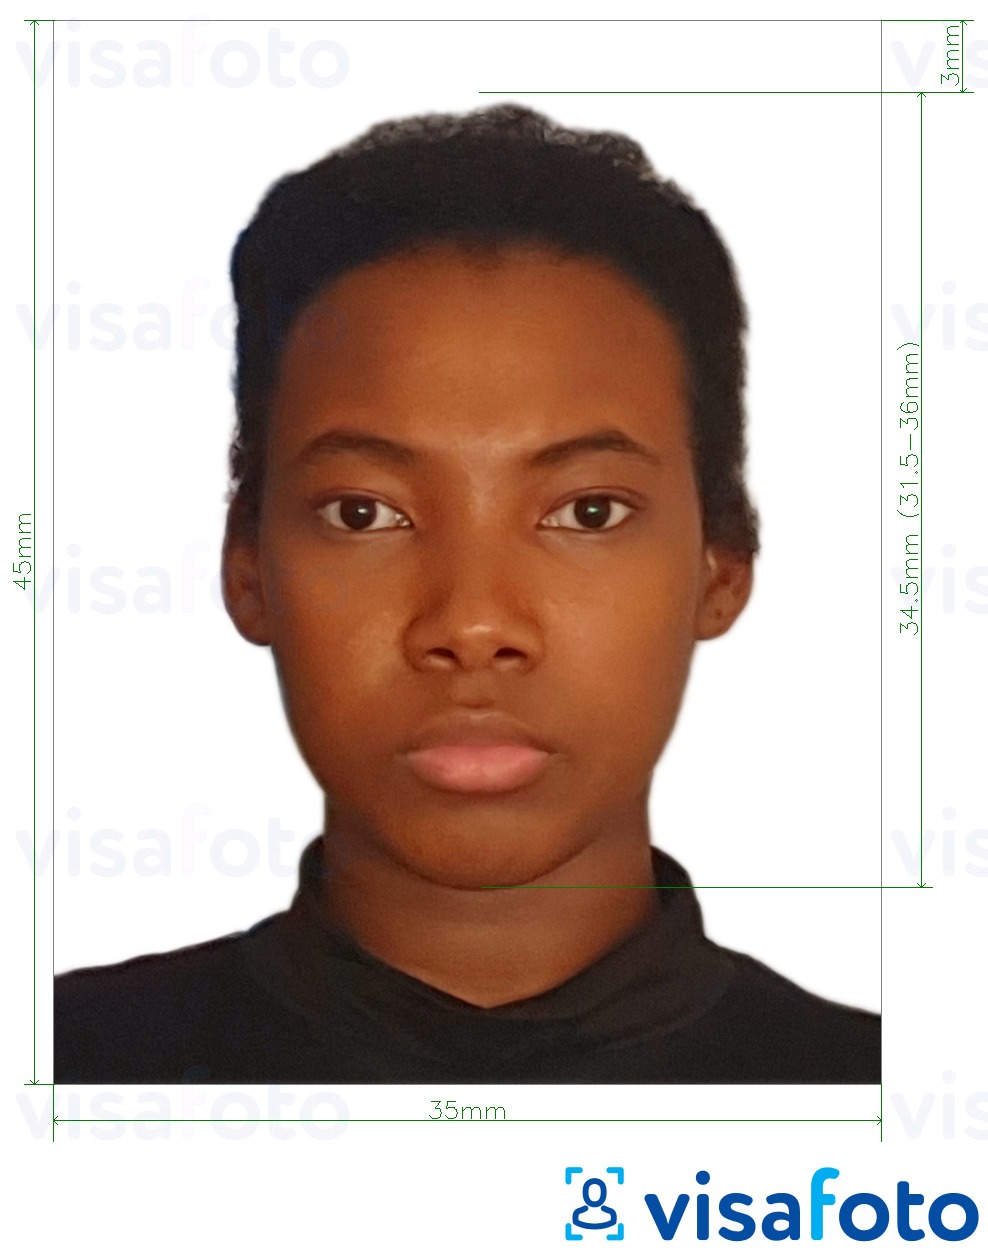 Contoh dari foto untuk Visa Mozambik 35x45 mm (3,5x4,5 cm) dengan ukuran spesifikasi yang tepat